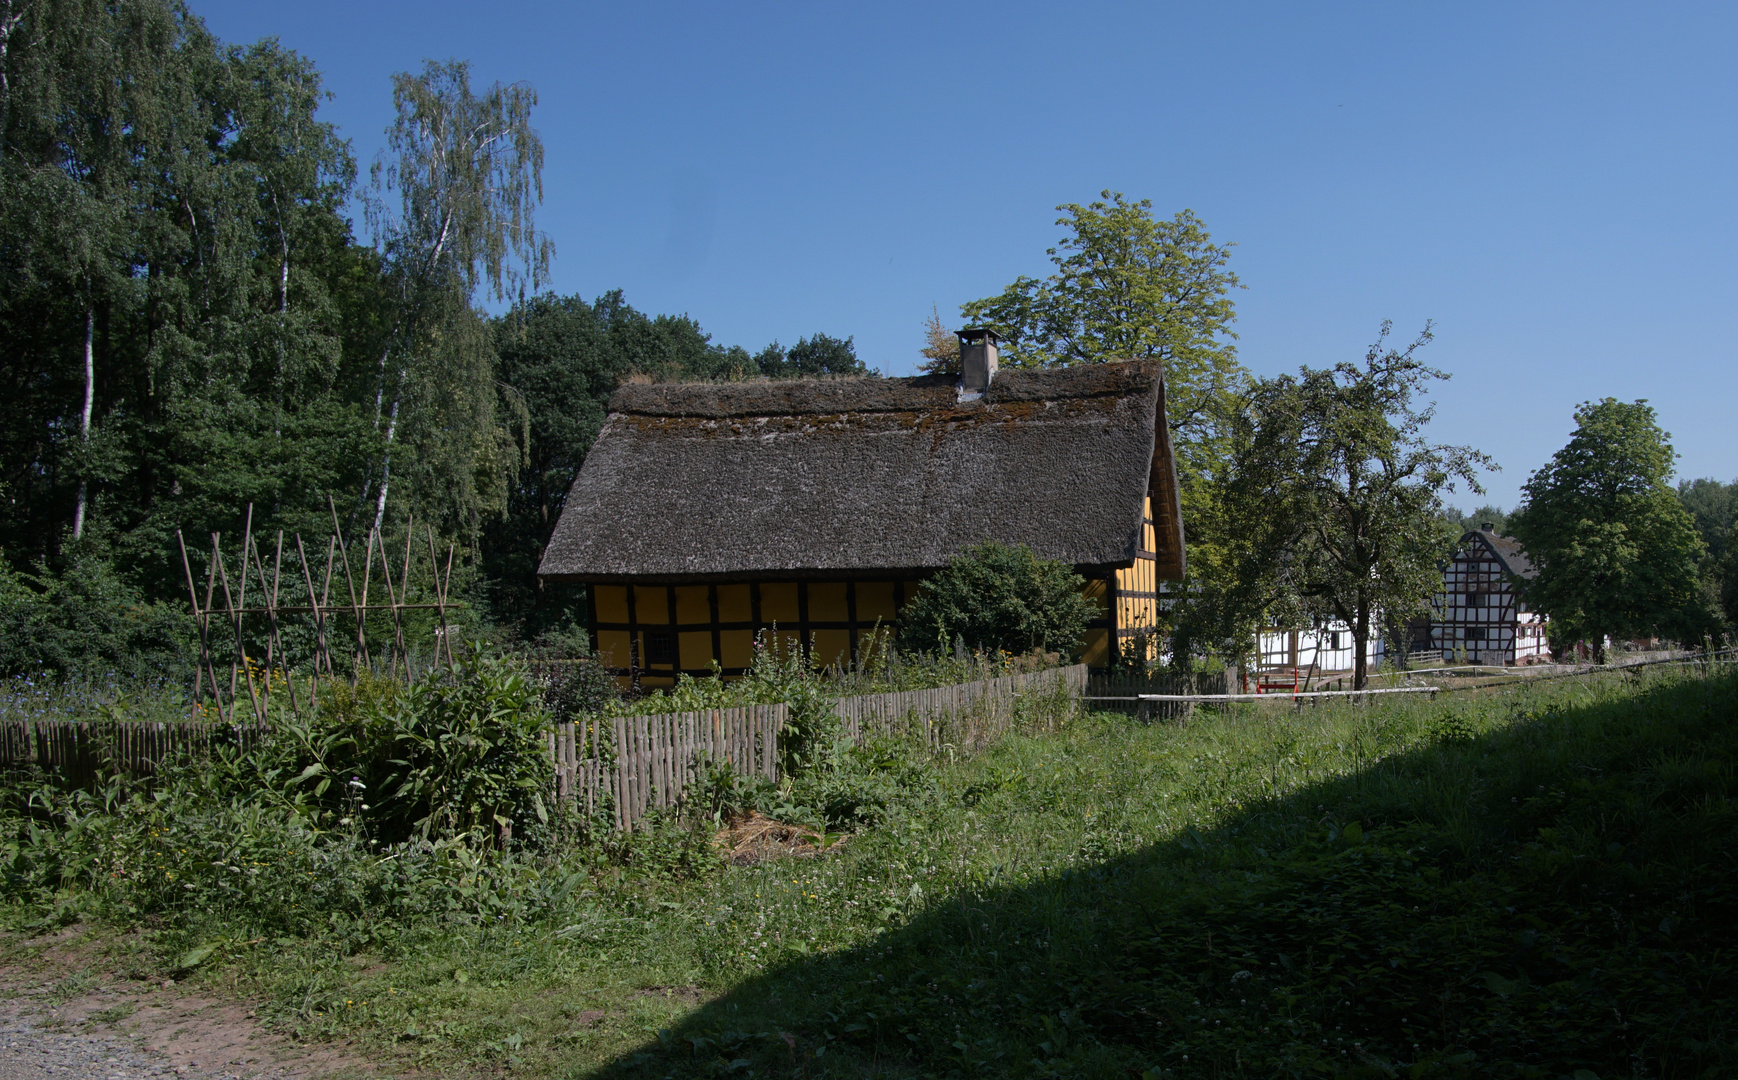 LVR Kommern (151) Haus aus Kessenich